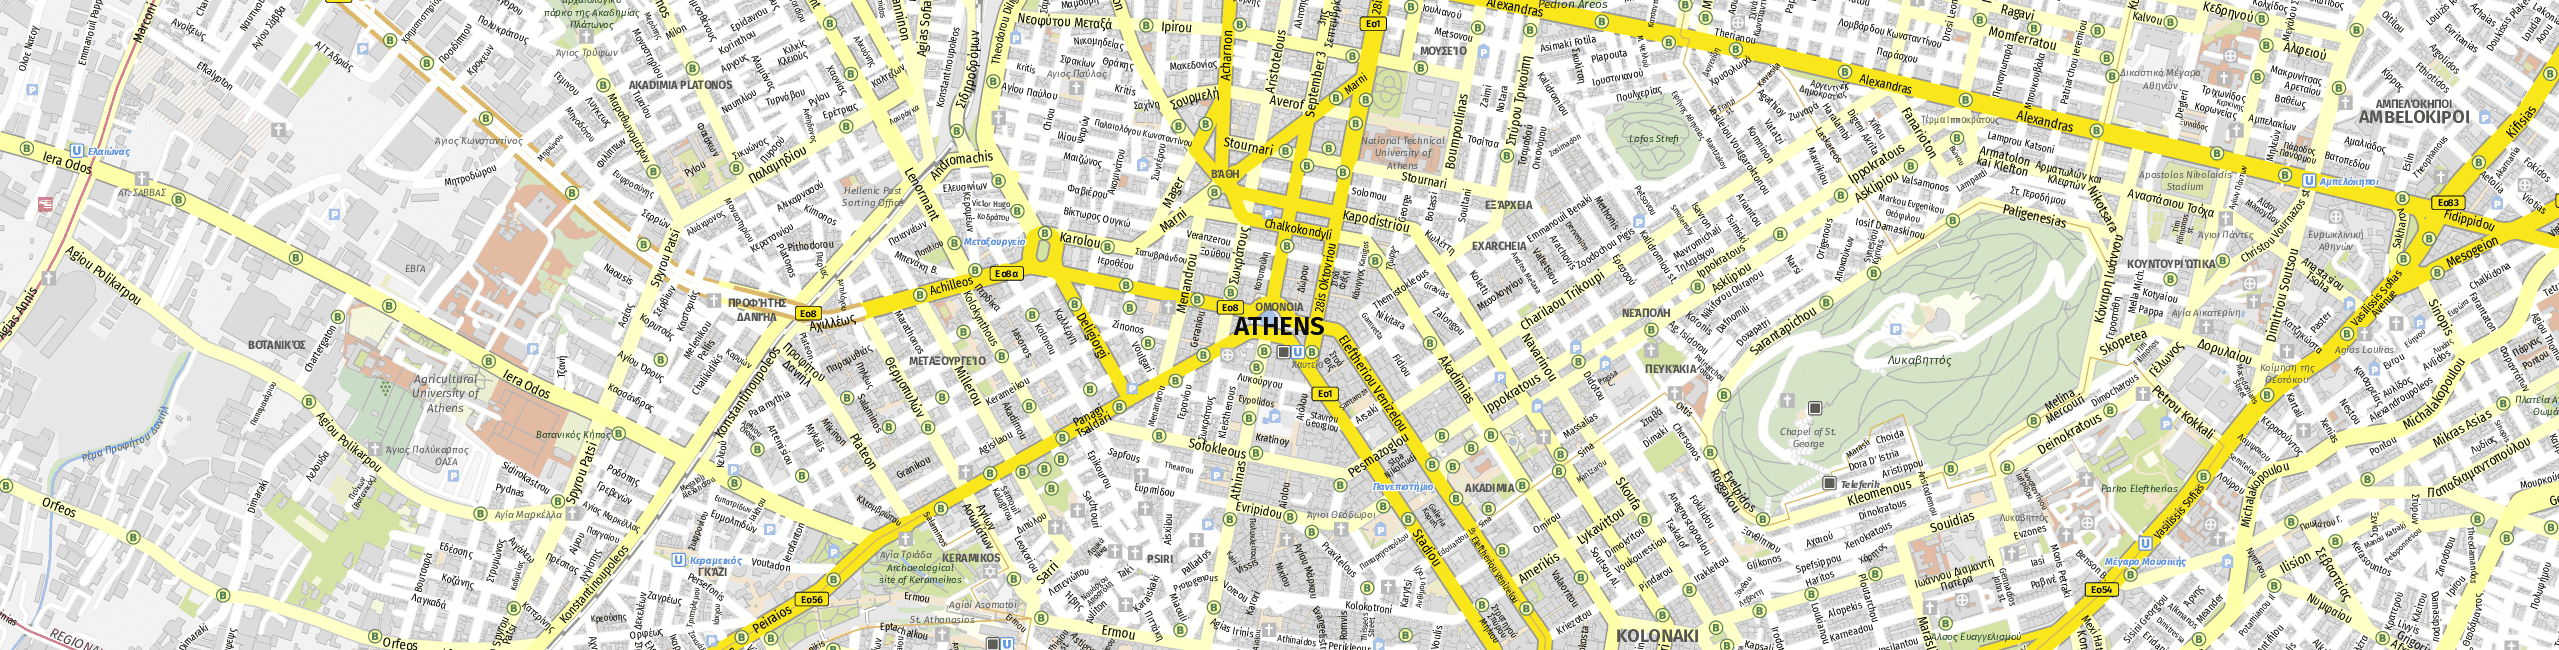 Stadtplan Athens zum Downloaden.